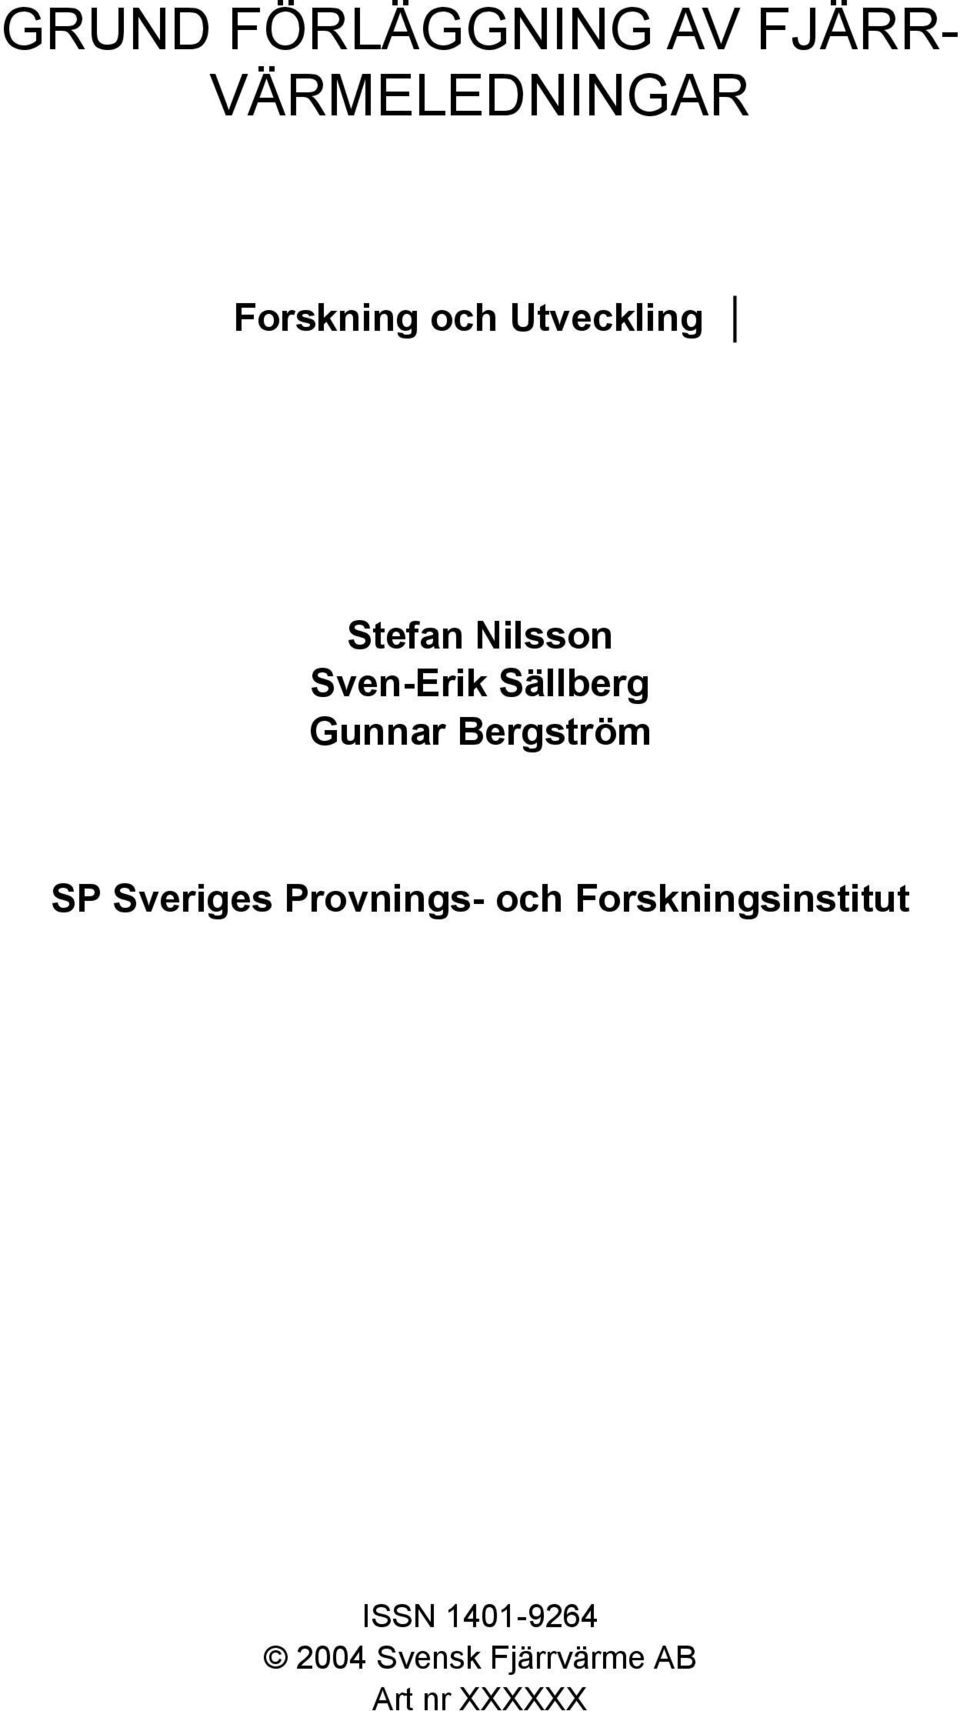 Gunnar Bergström SP Sveriges Provnings- och